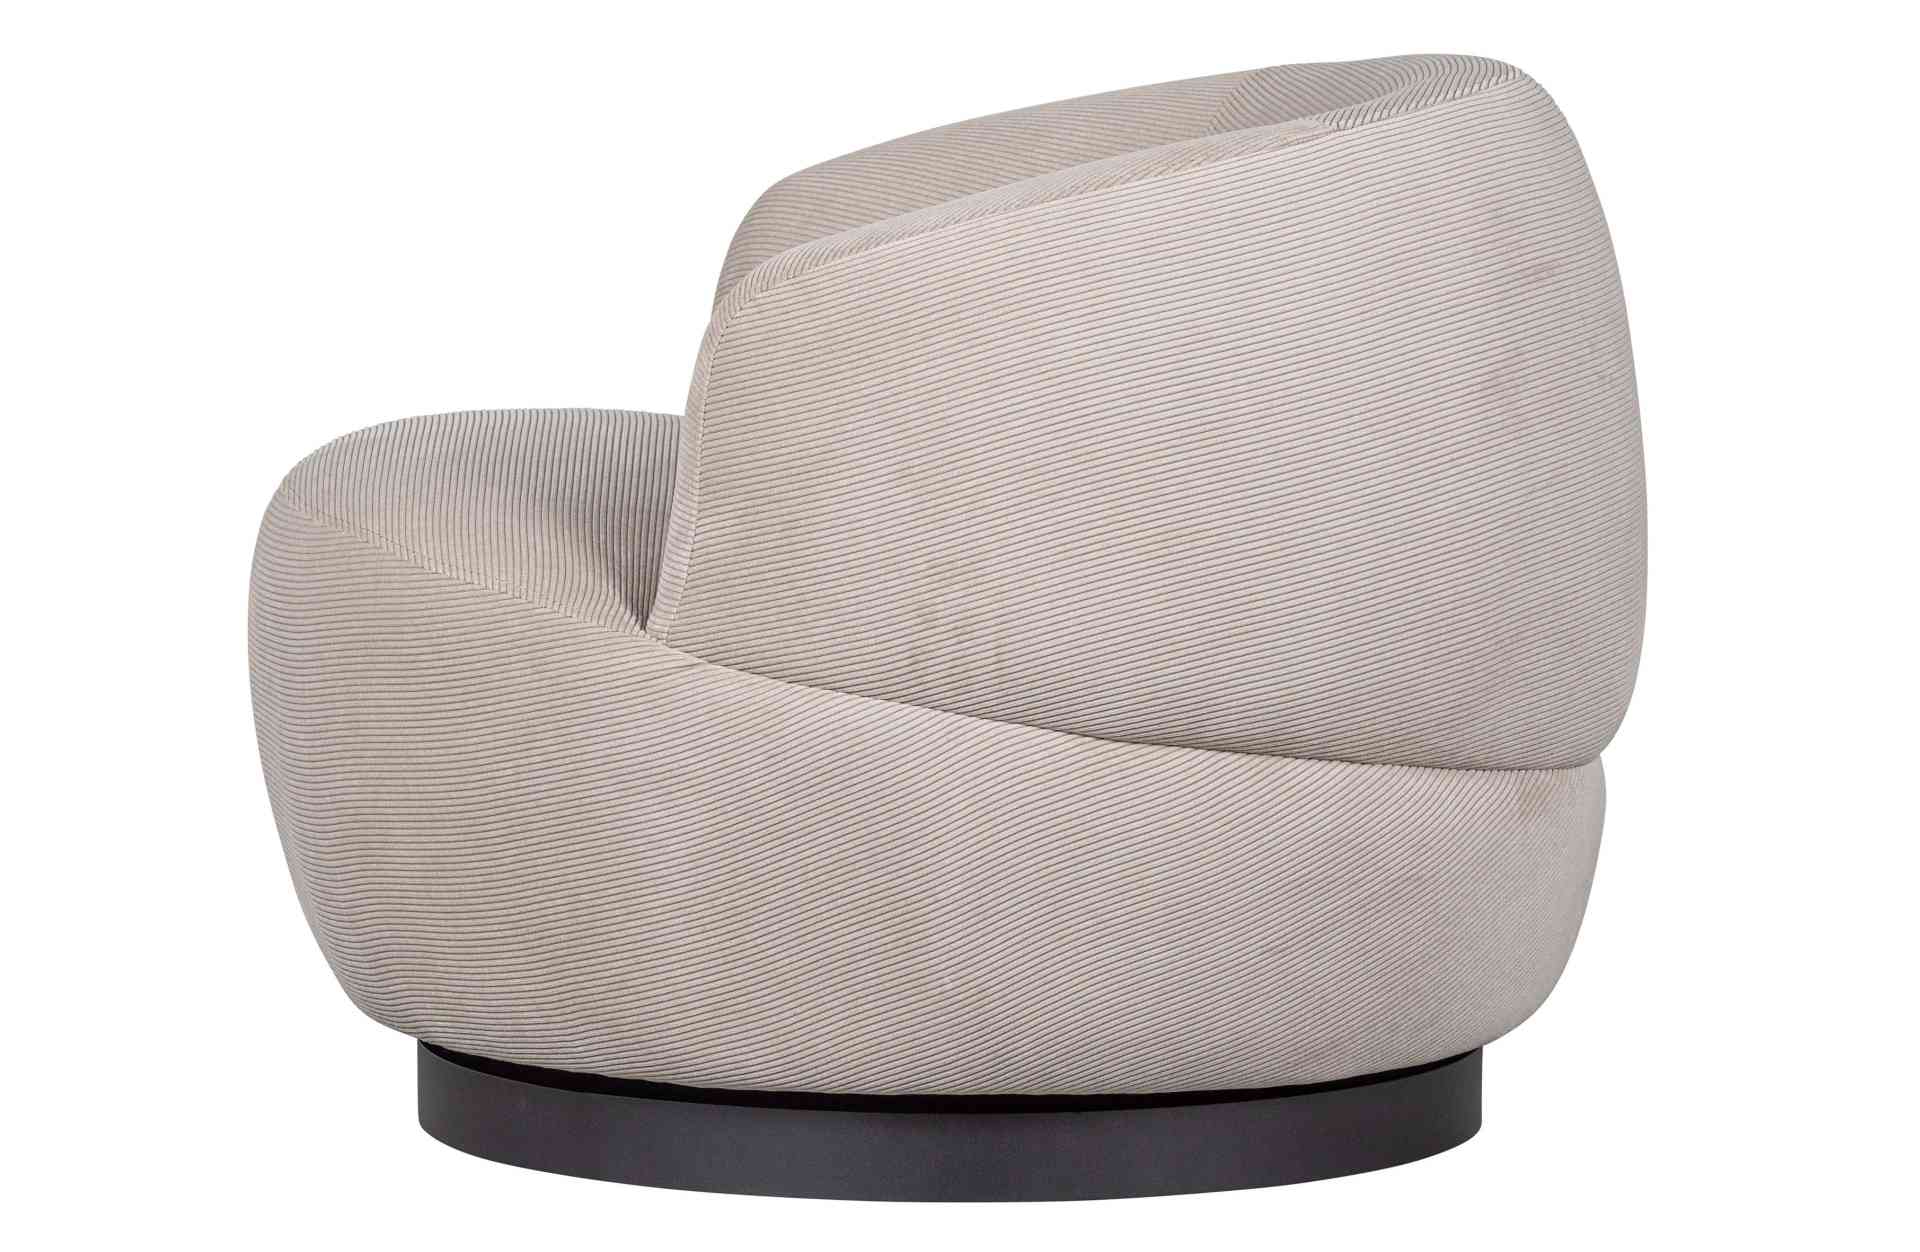 Der Sessel Woolly überzeugt mit seinem moderndem Design. Gefertigt wurde er aus Rib-Cord, welches einen Beige Farbton besitzt. Das Gestell ist aus Metall und besitzt eine Drehfunktion, außerdem ist es in einer schwarzen Farbe. Die Sitzhöhe beträgt 46 cm.